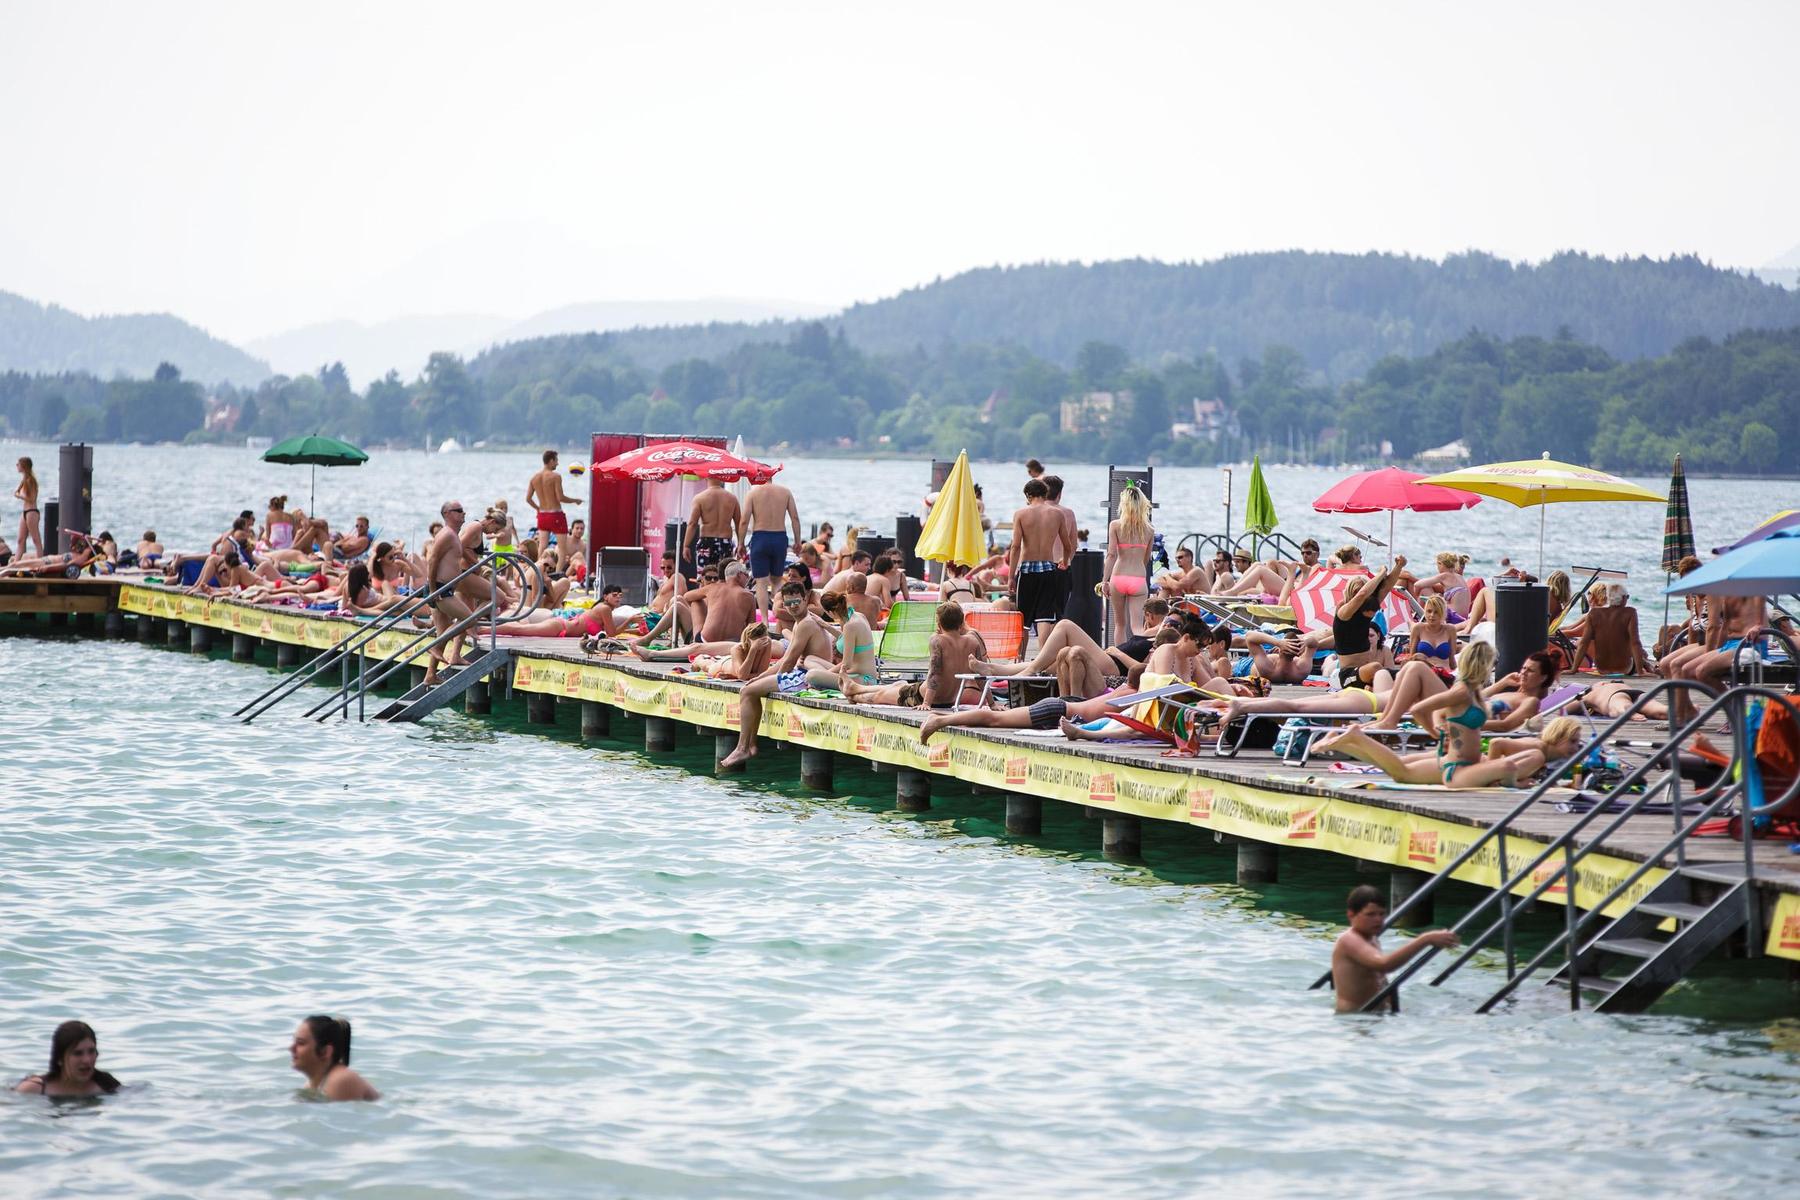 Lufttemperatur kaum höher: 28 Grad - Kärntens Seen „kochen“ schon beinahe